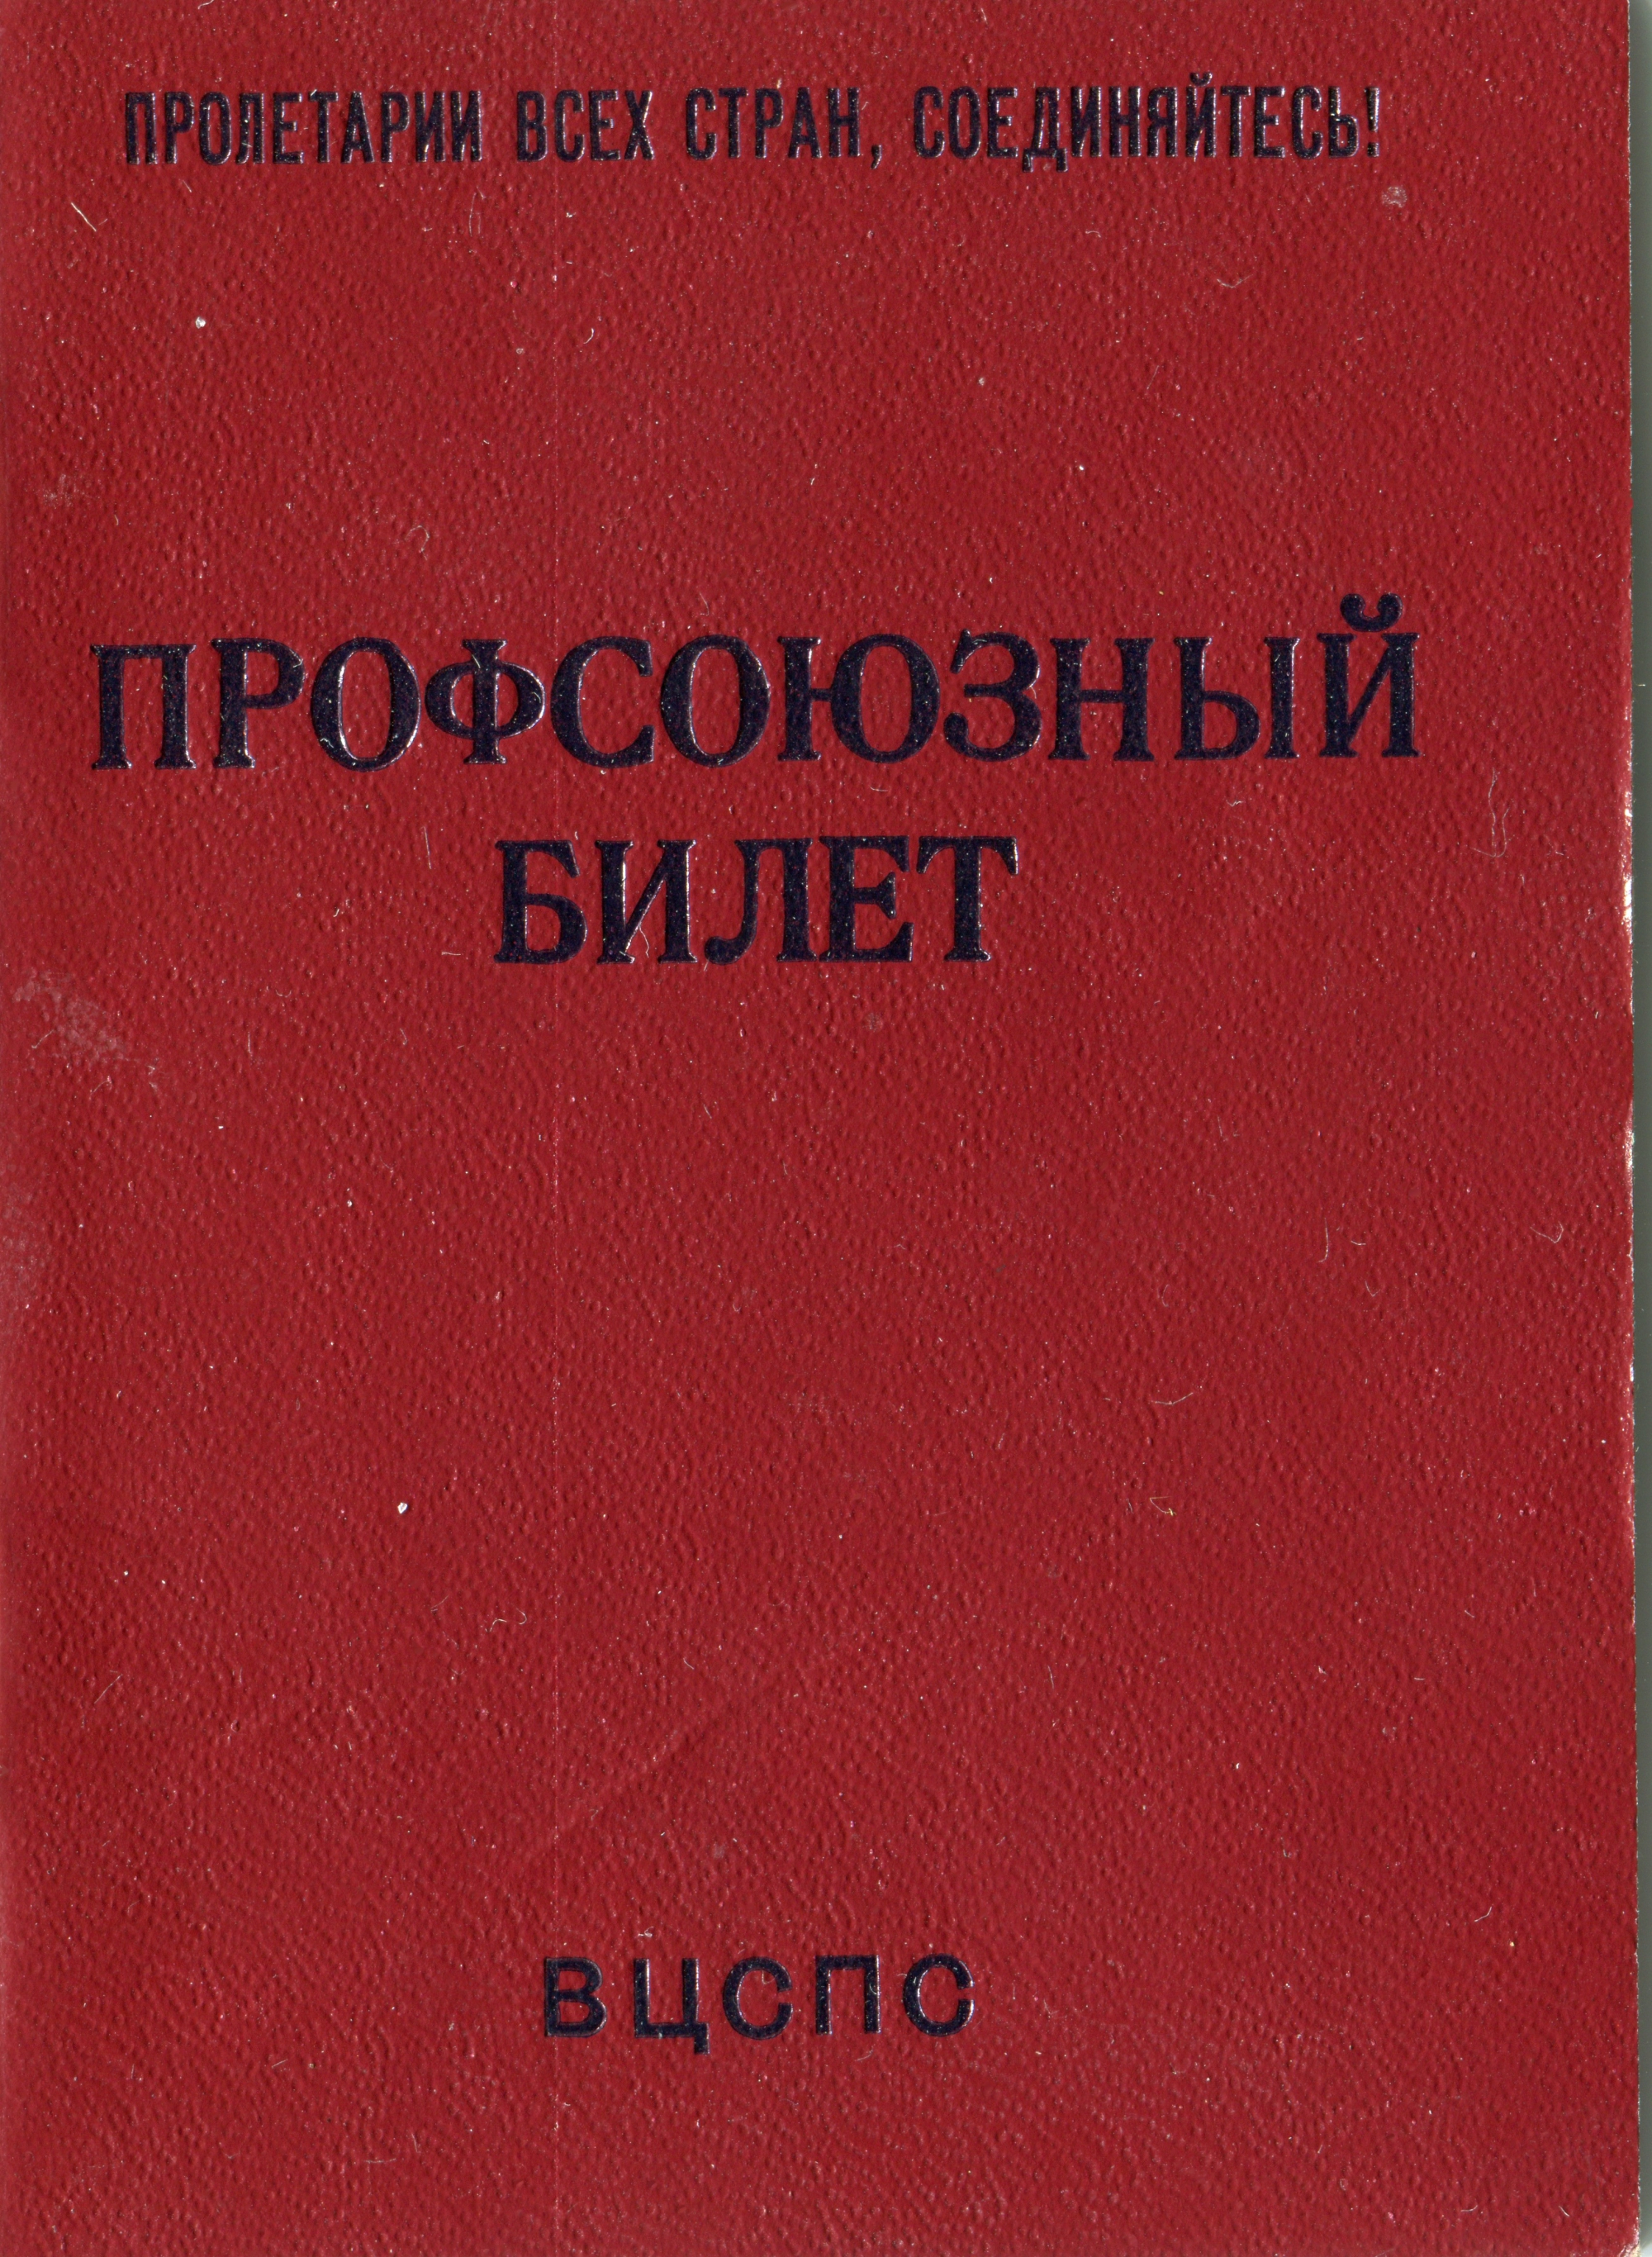 Немного документов времен СССР